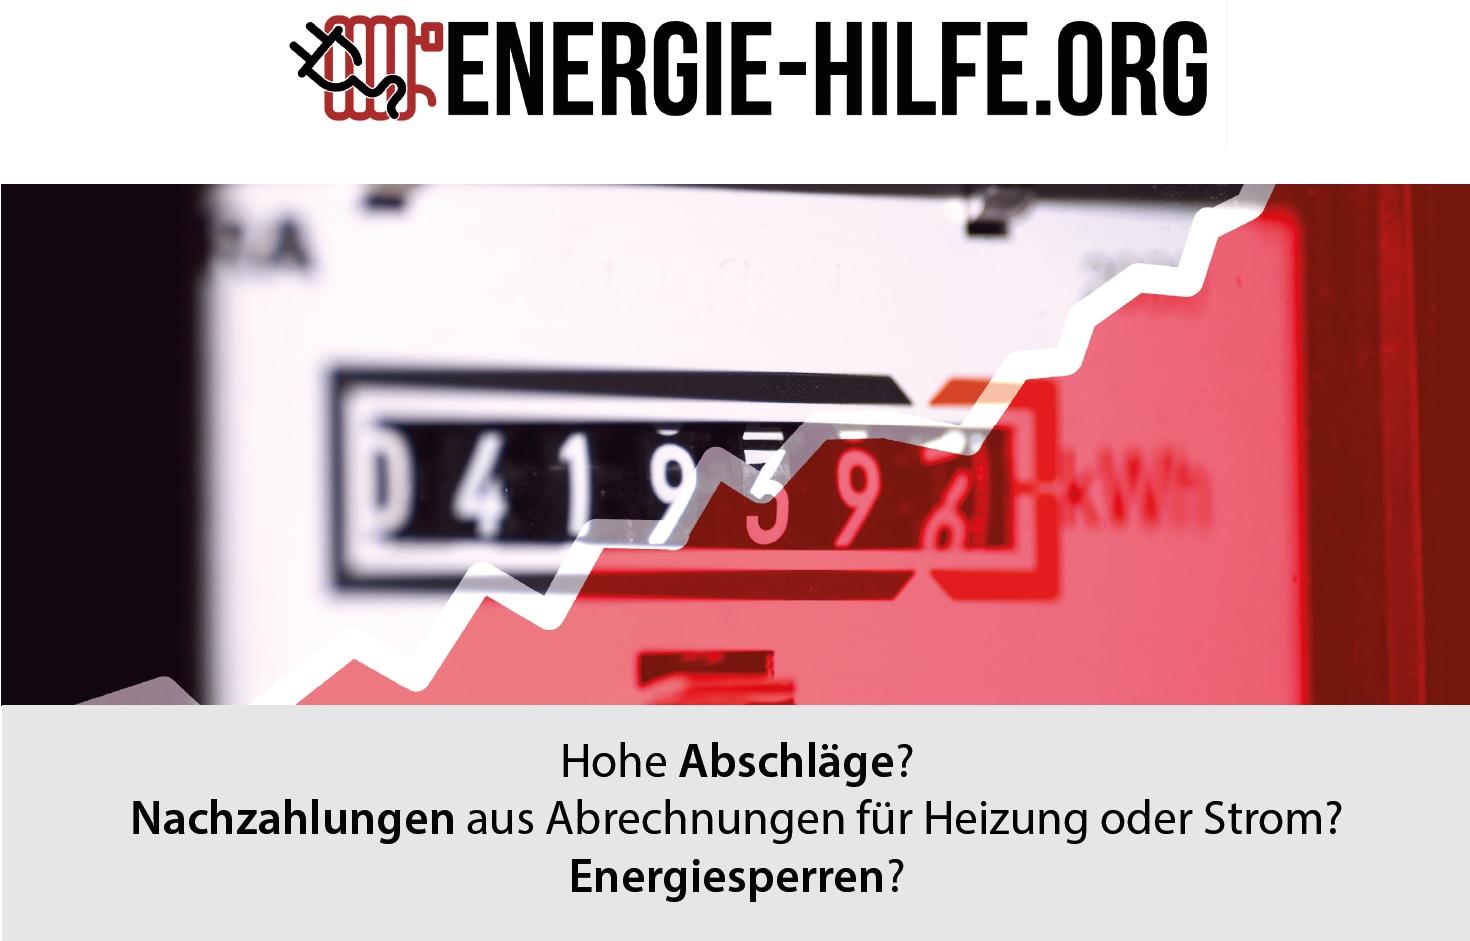 ENERGIE-HILFE.ORG